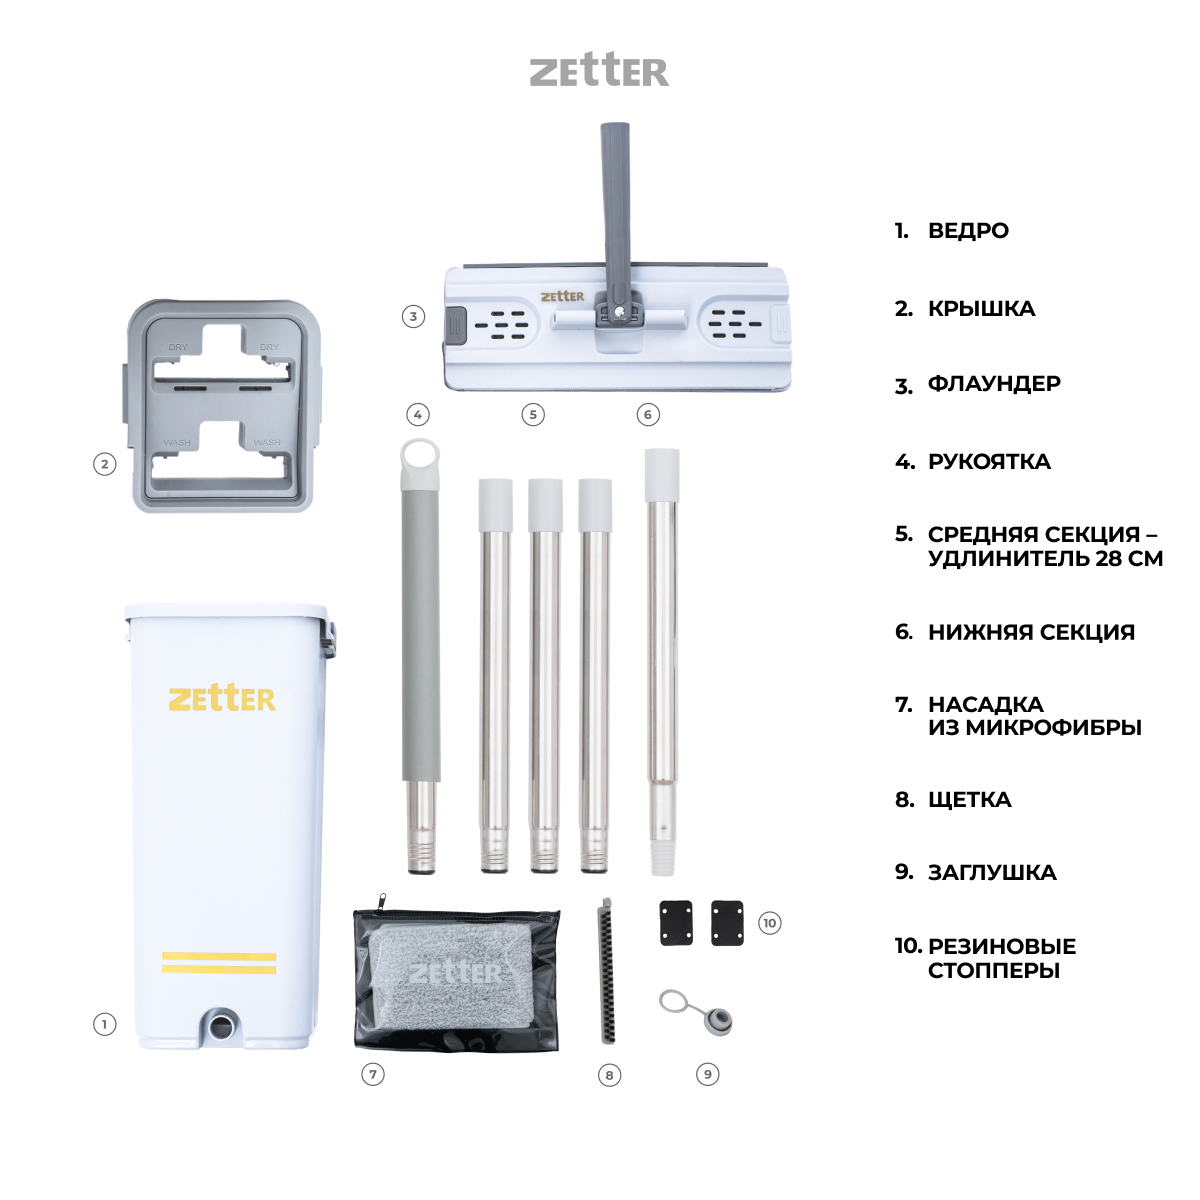 Система для уборки ZETTER S 6.5 л - фото 8